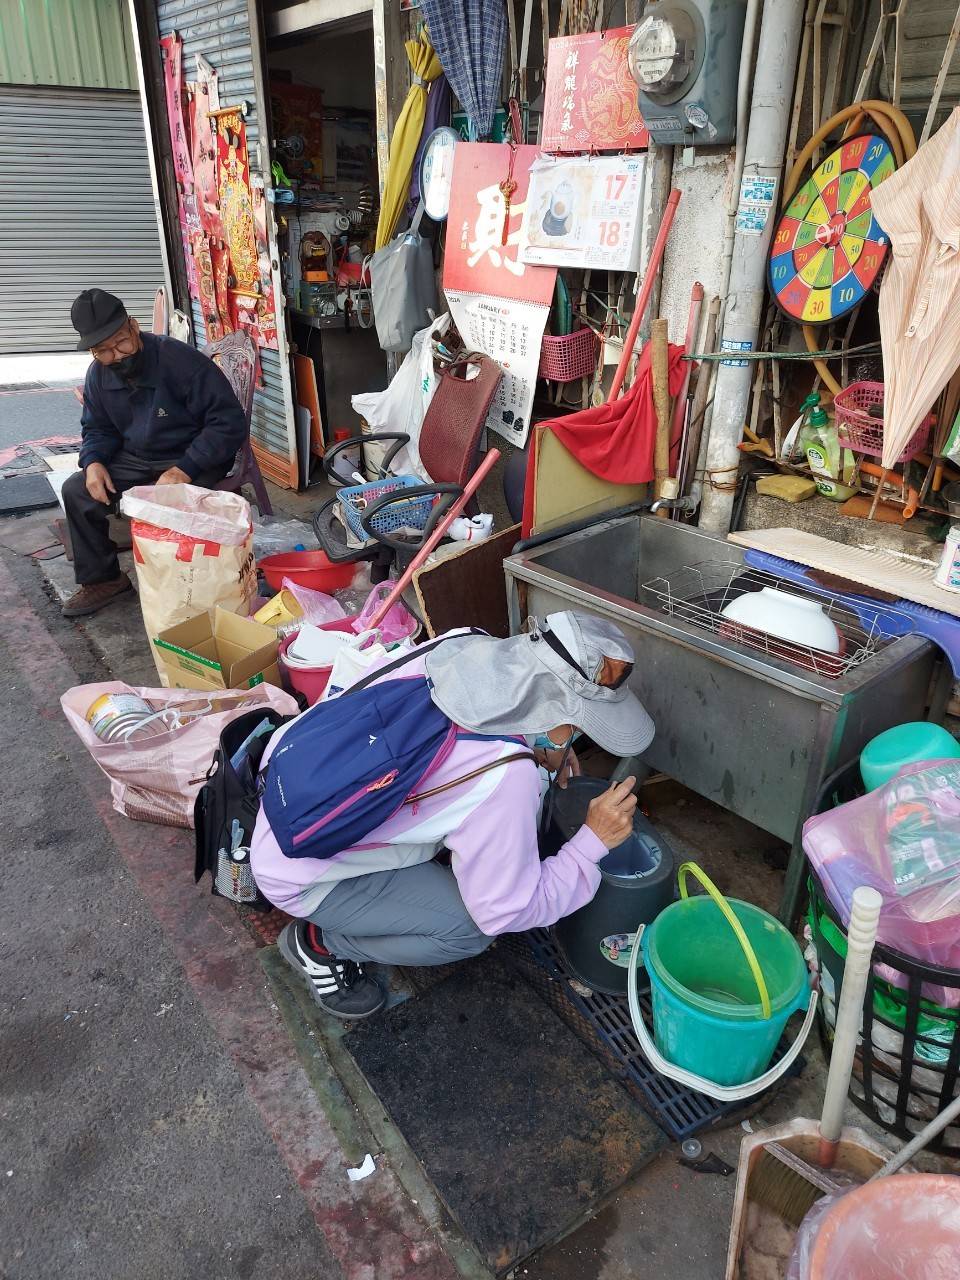 [新聞] 今年已有12例登革熱境外移入 台南防制中